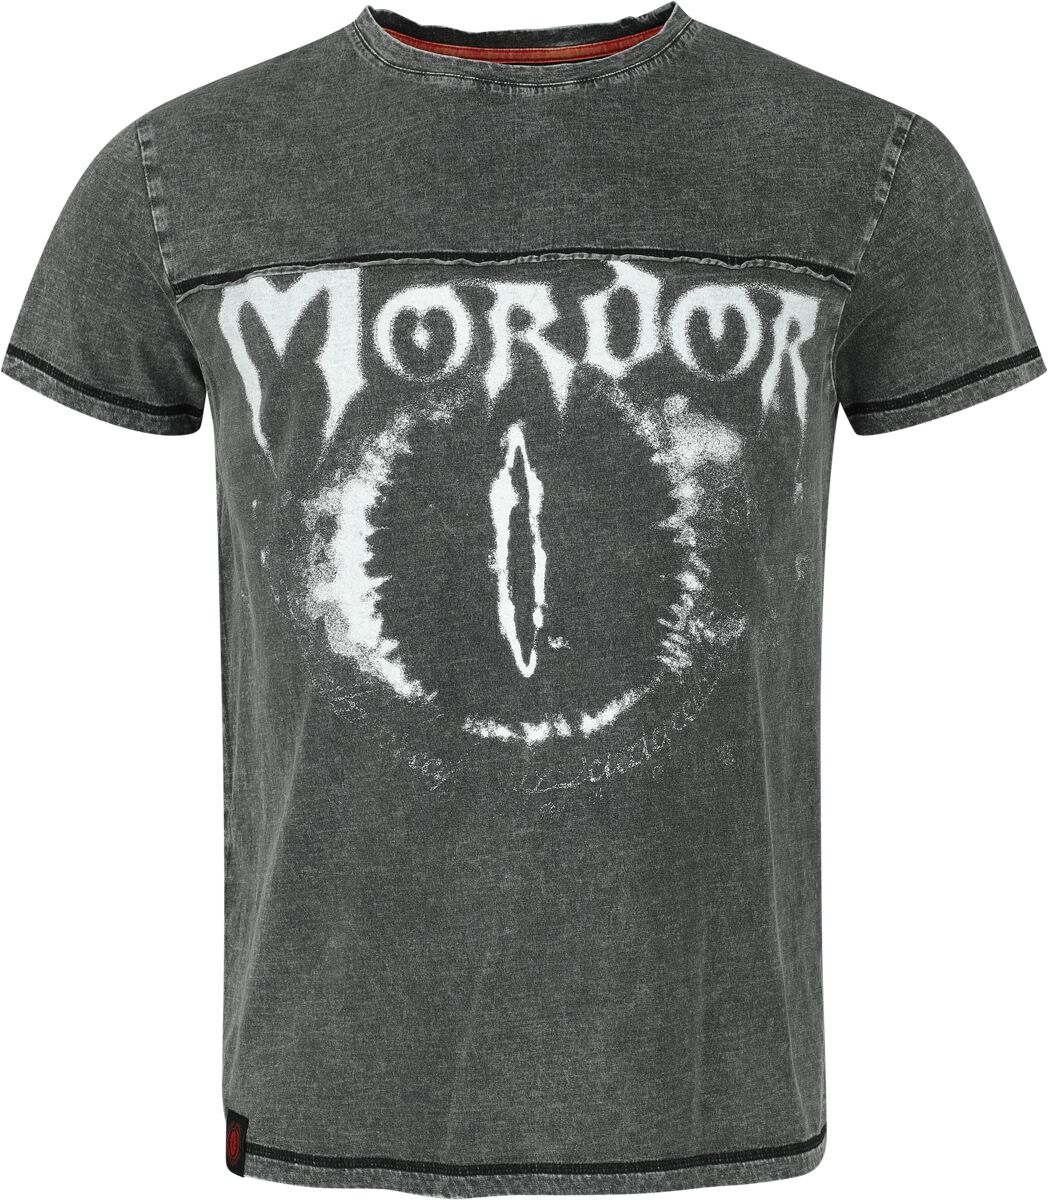 Der Herr der Ringe T-Shirt - Mordor - S bis XXL - für Männer - Größe L - charcoal  - EMP exklusives Merchandise!